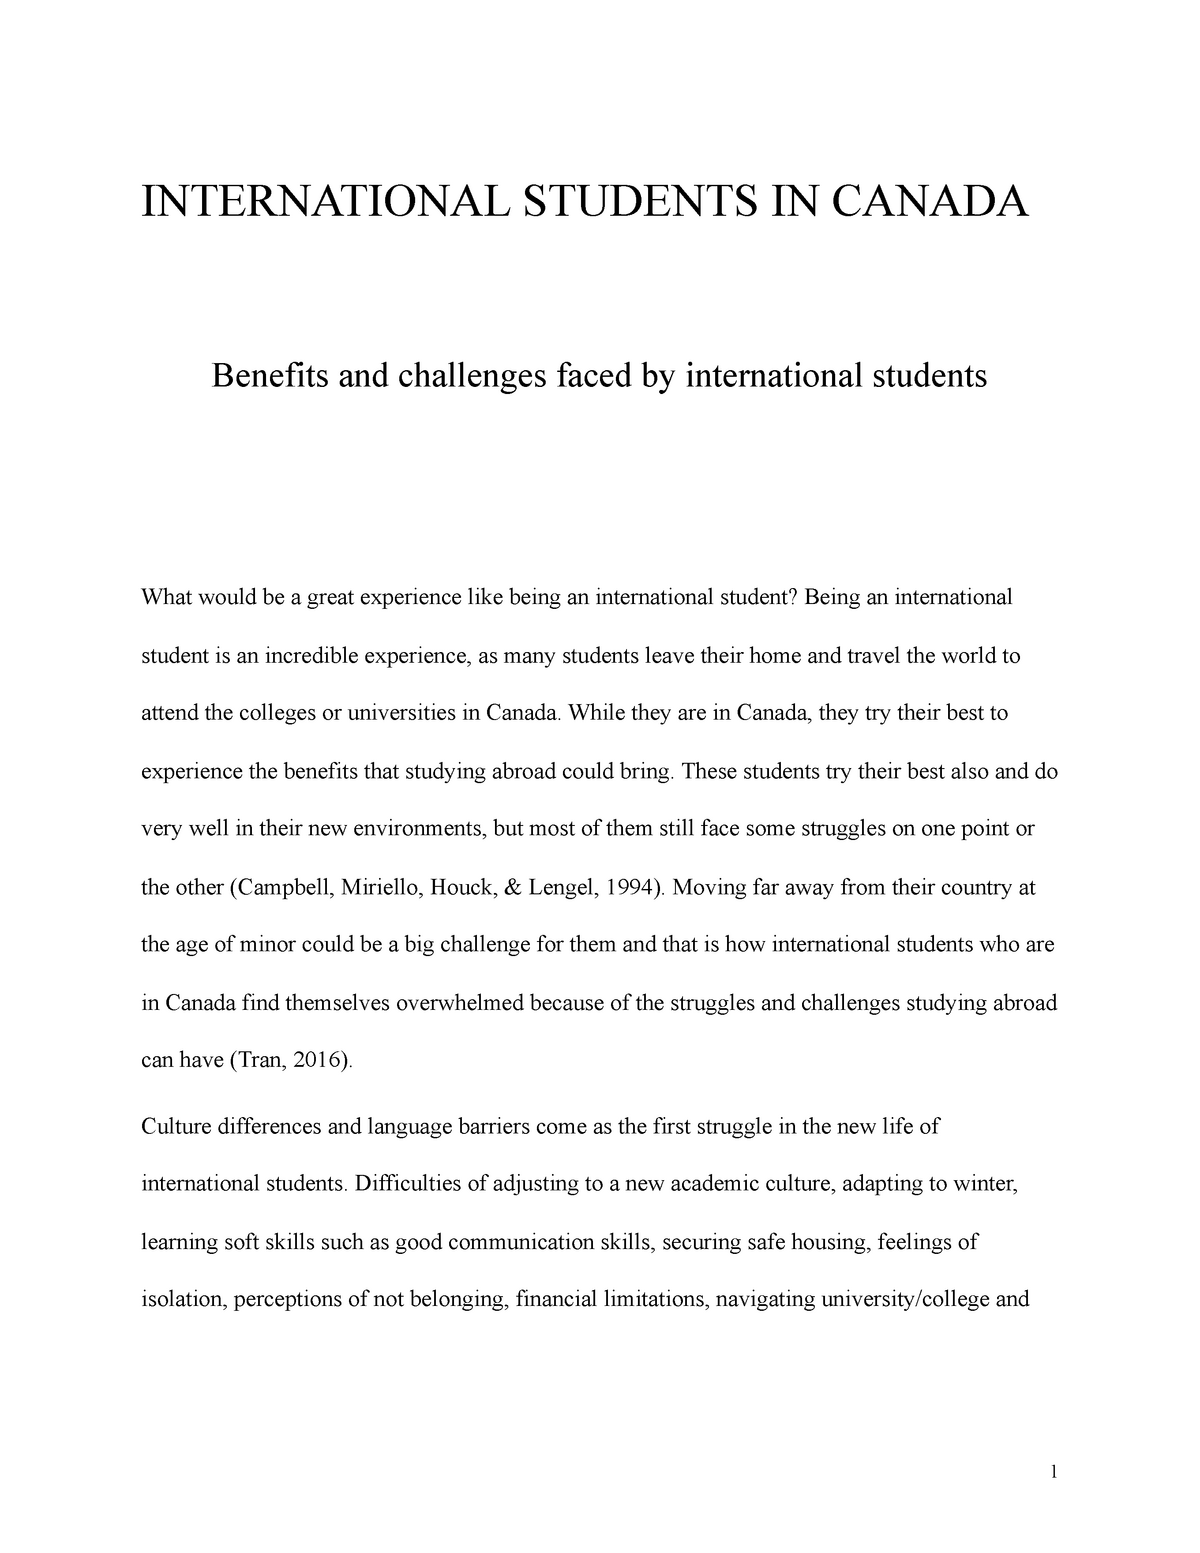 being an international student essay